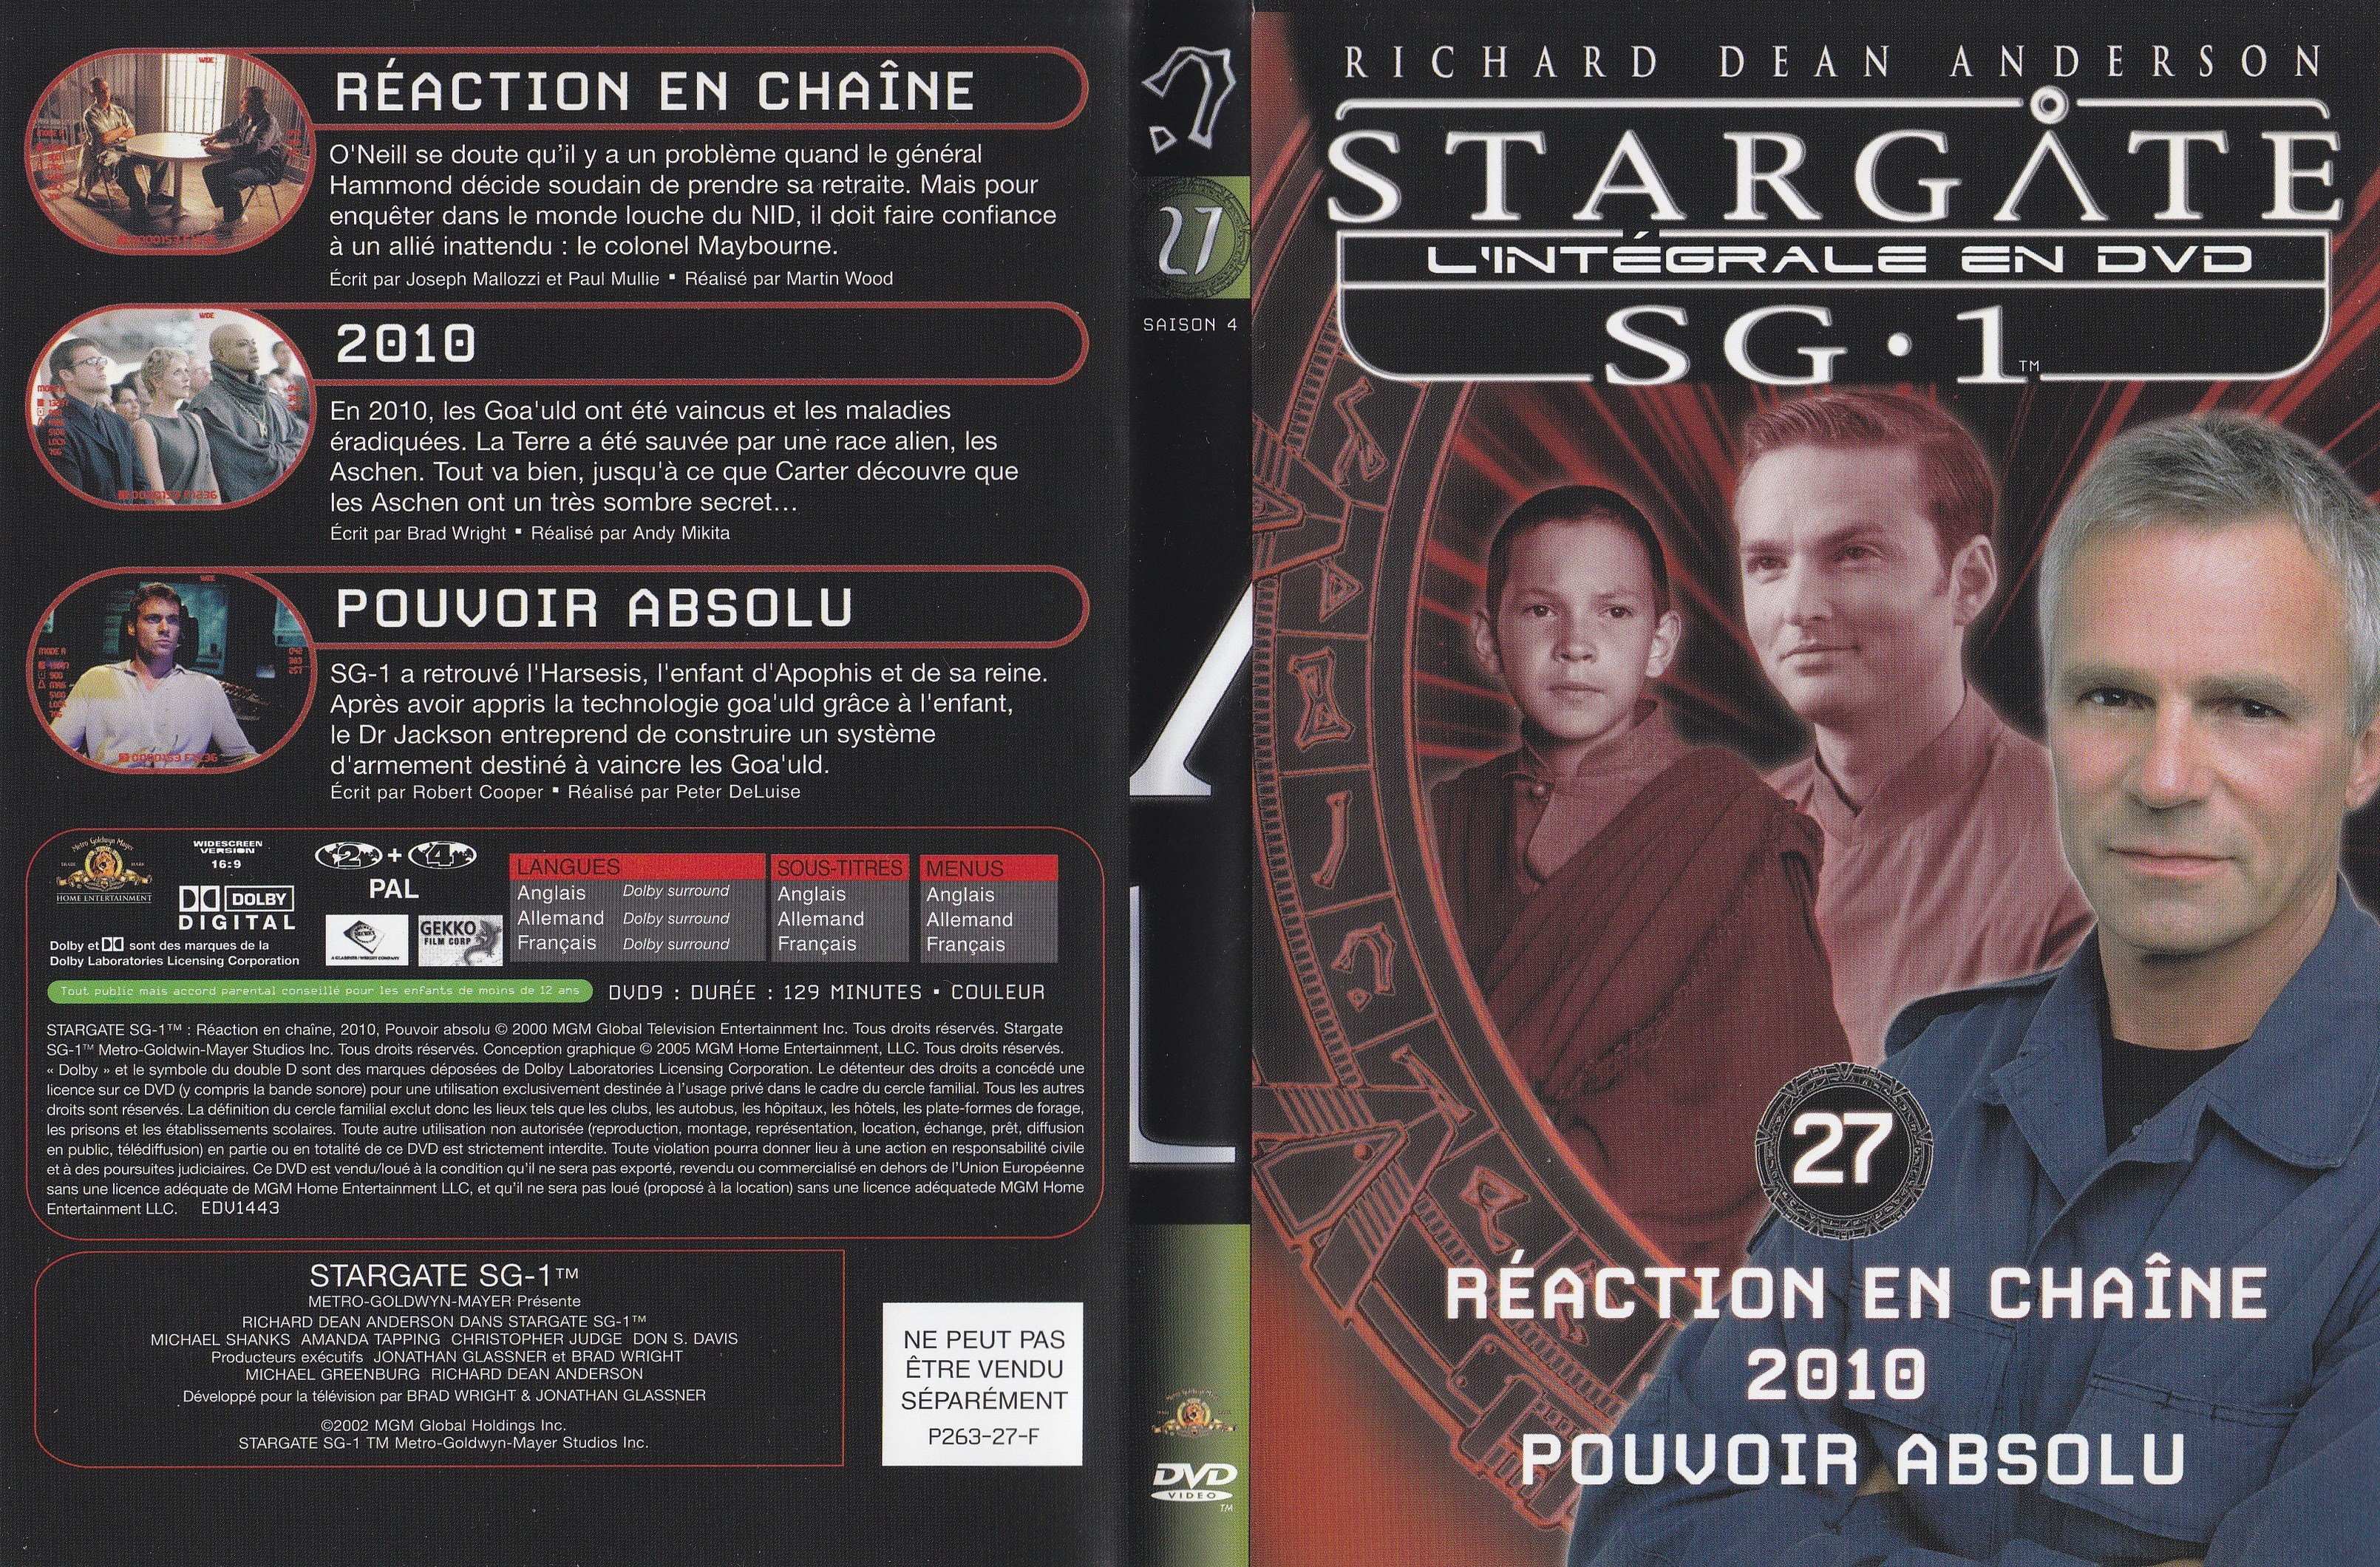 Stargate SG1 Intgrale Saison 4 vol 27